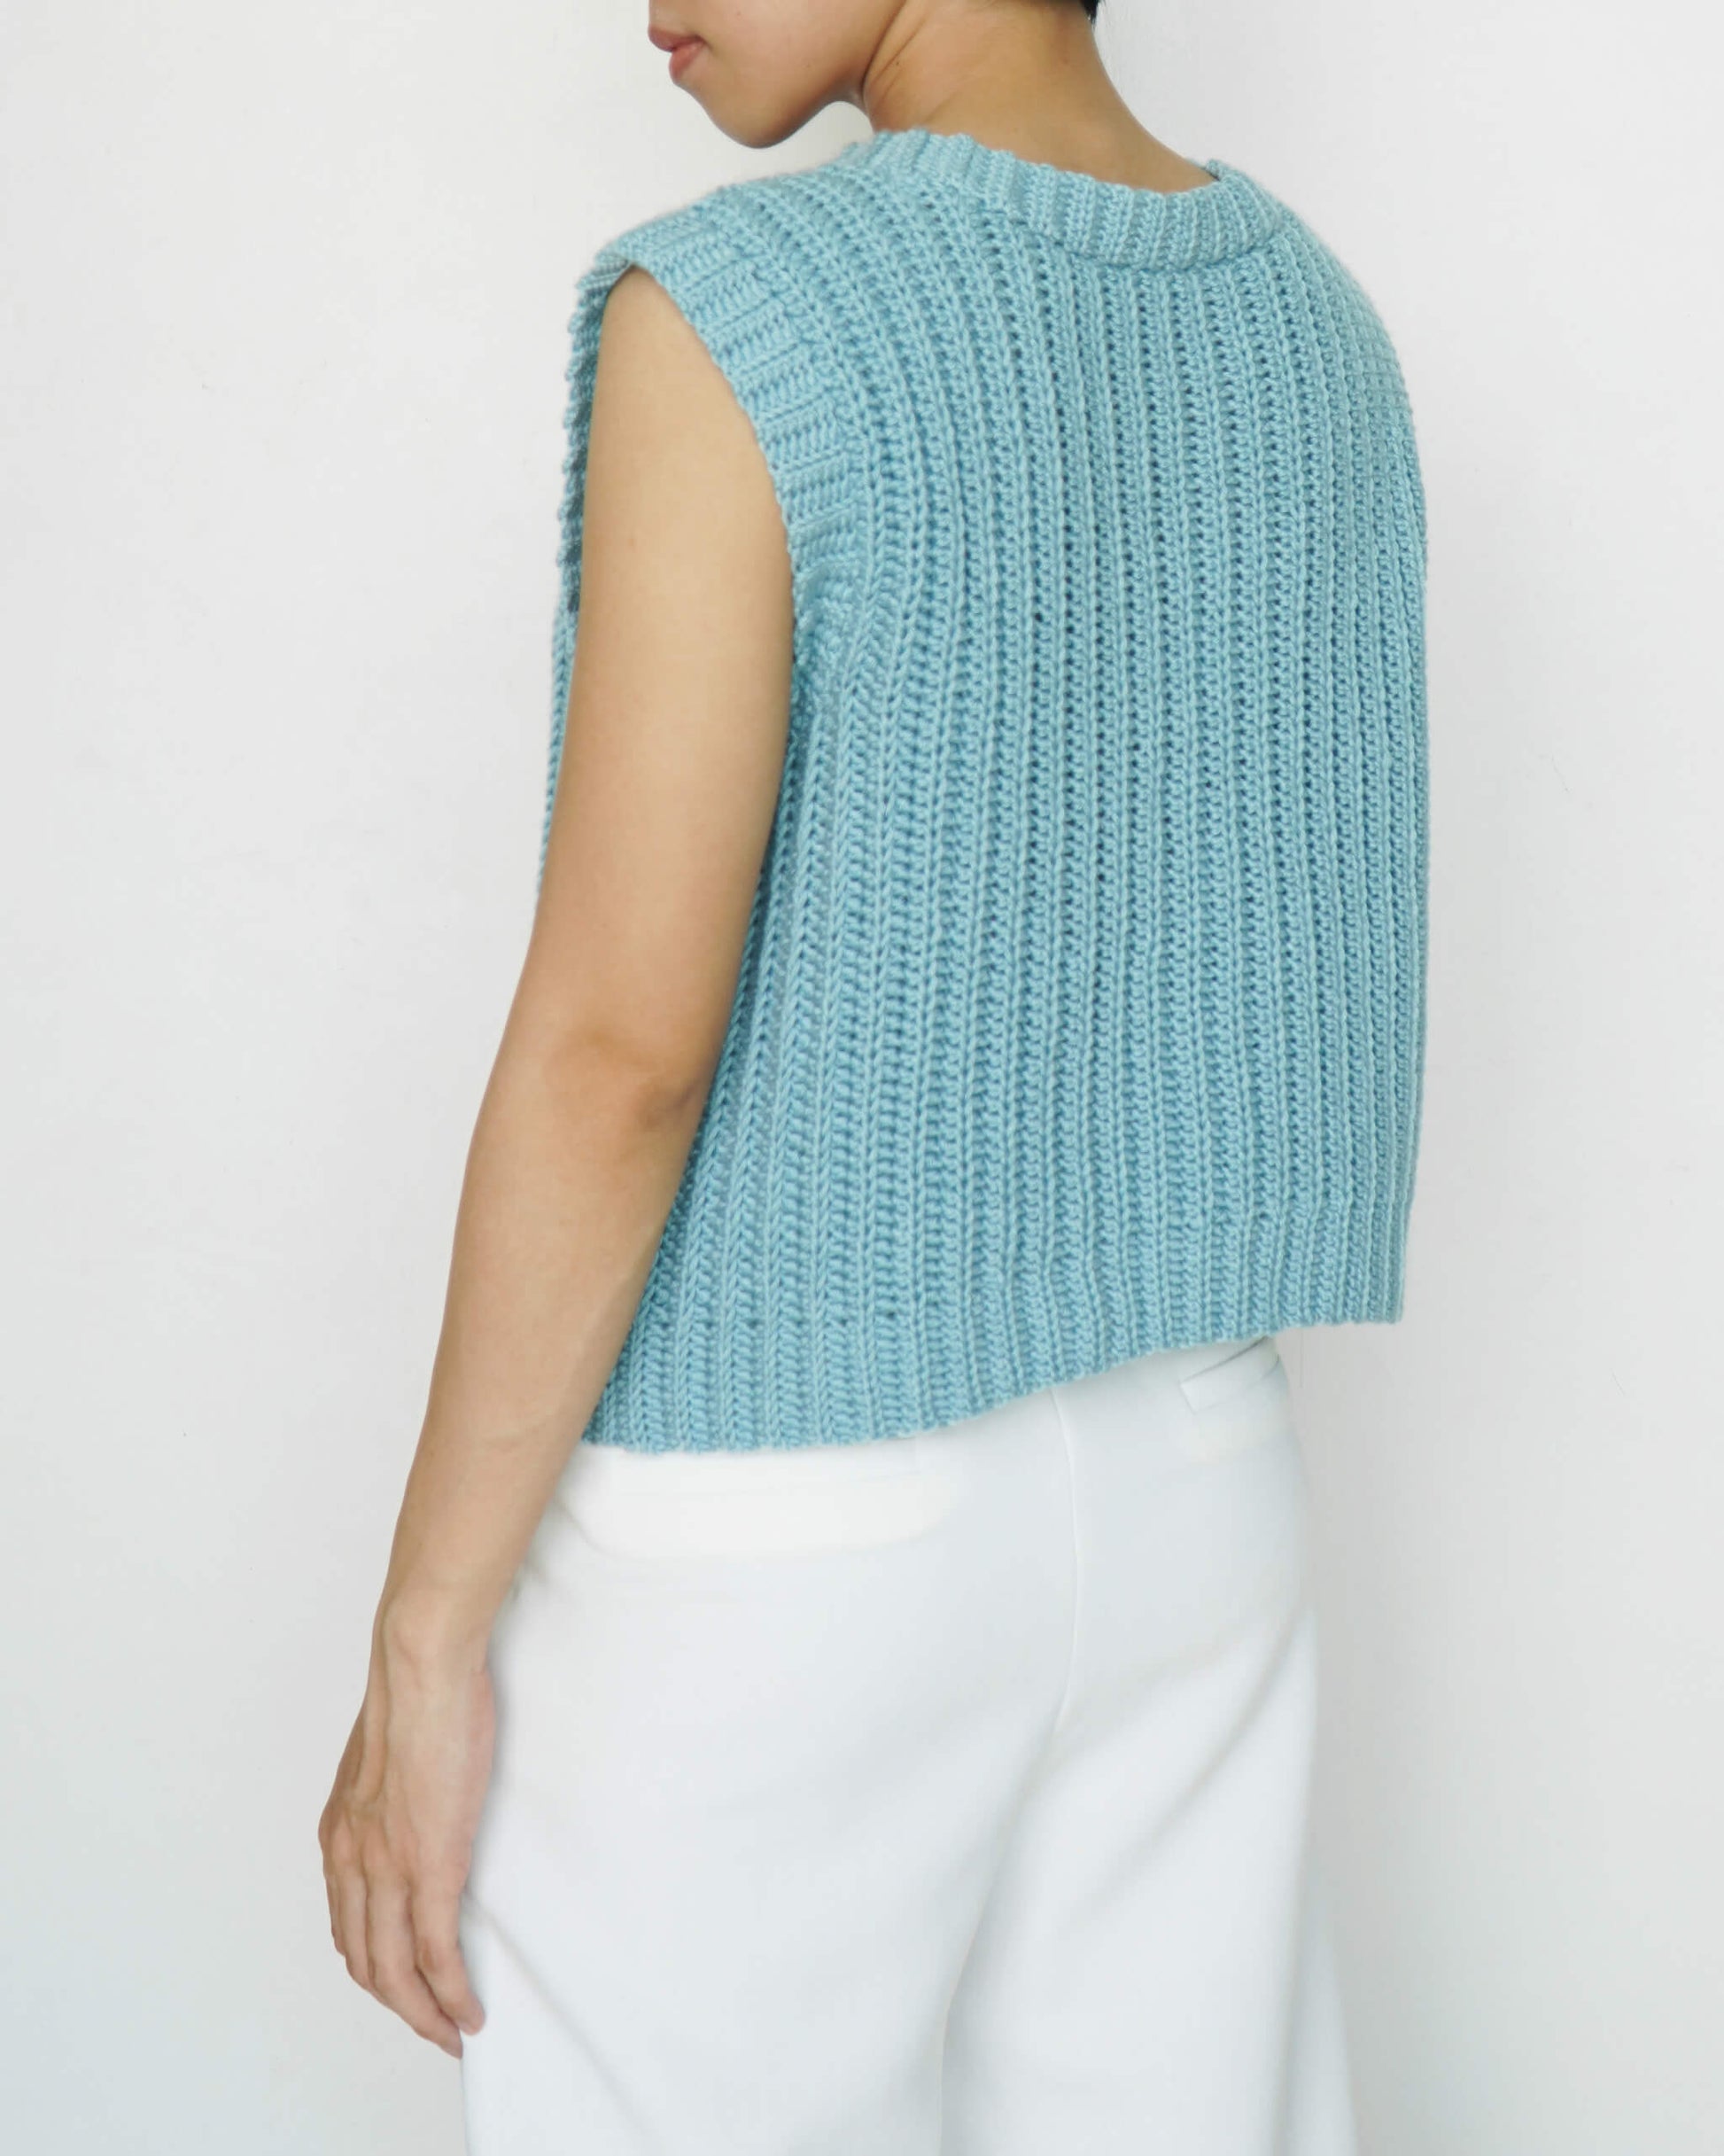 Vest No.30  Easy crochet ribbed vest pattern – Daisy & Peace